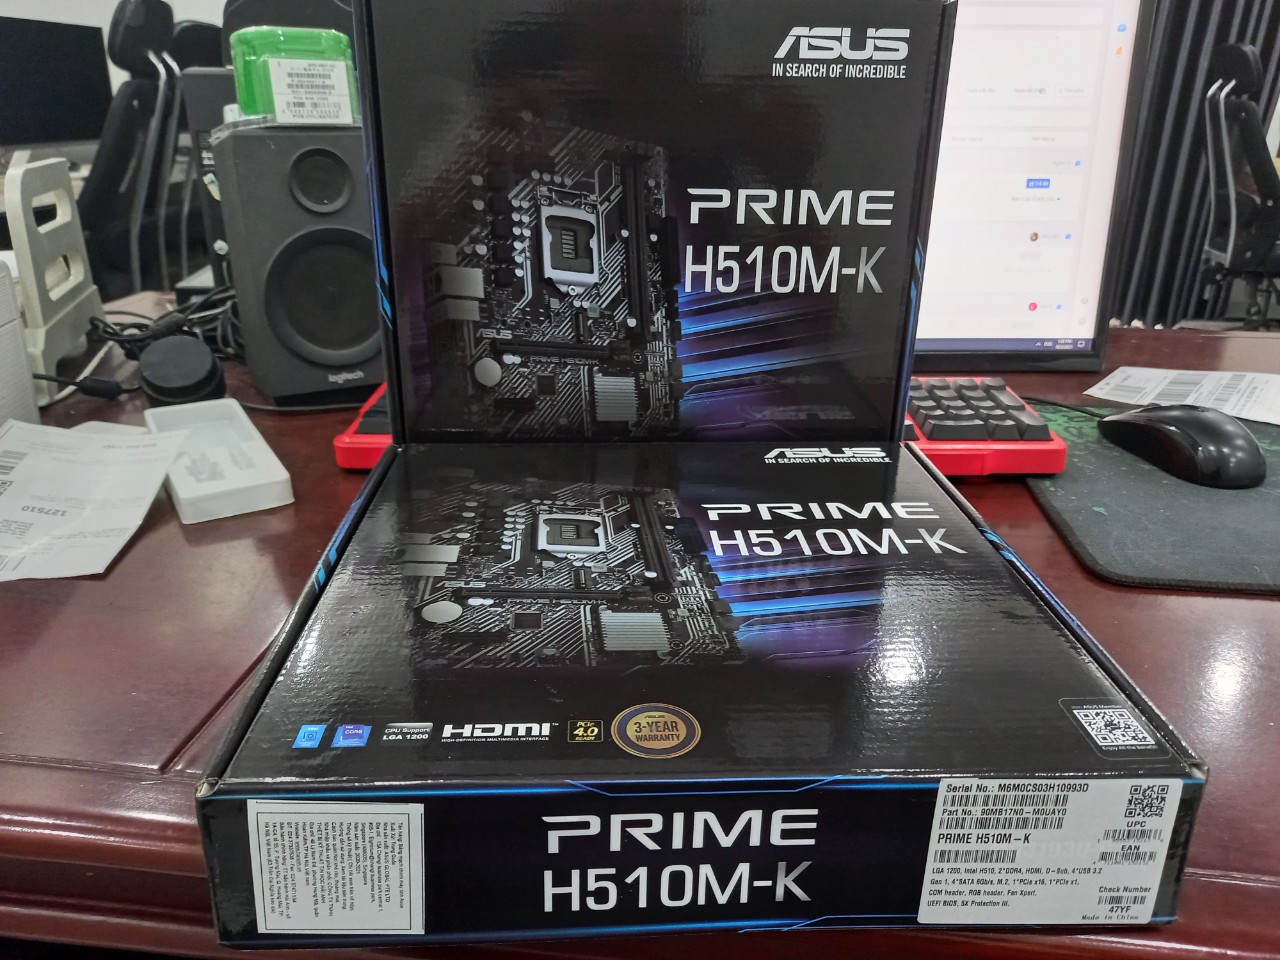 Mainboard ASUS PRIME H510M-K (Intel H510, Socket 1200, m-ATX, 2 khe Ram DDR4, cổng HDMI) CHÍNH HÃNG NEW 100% BH...